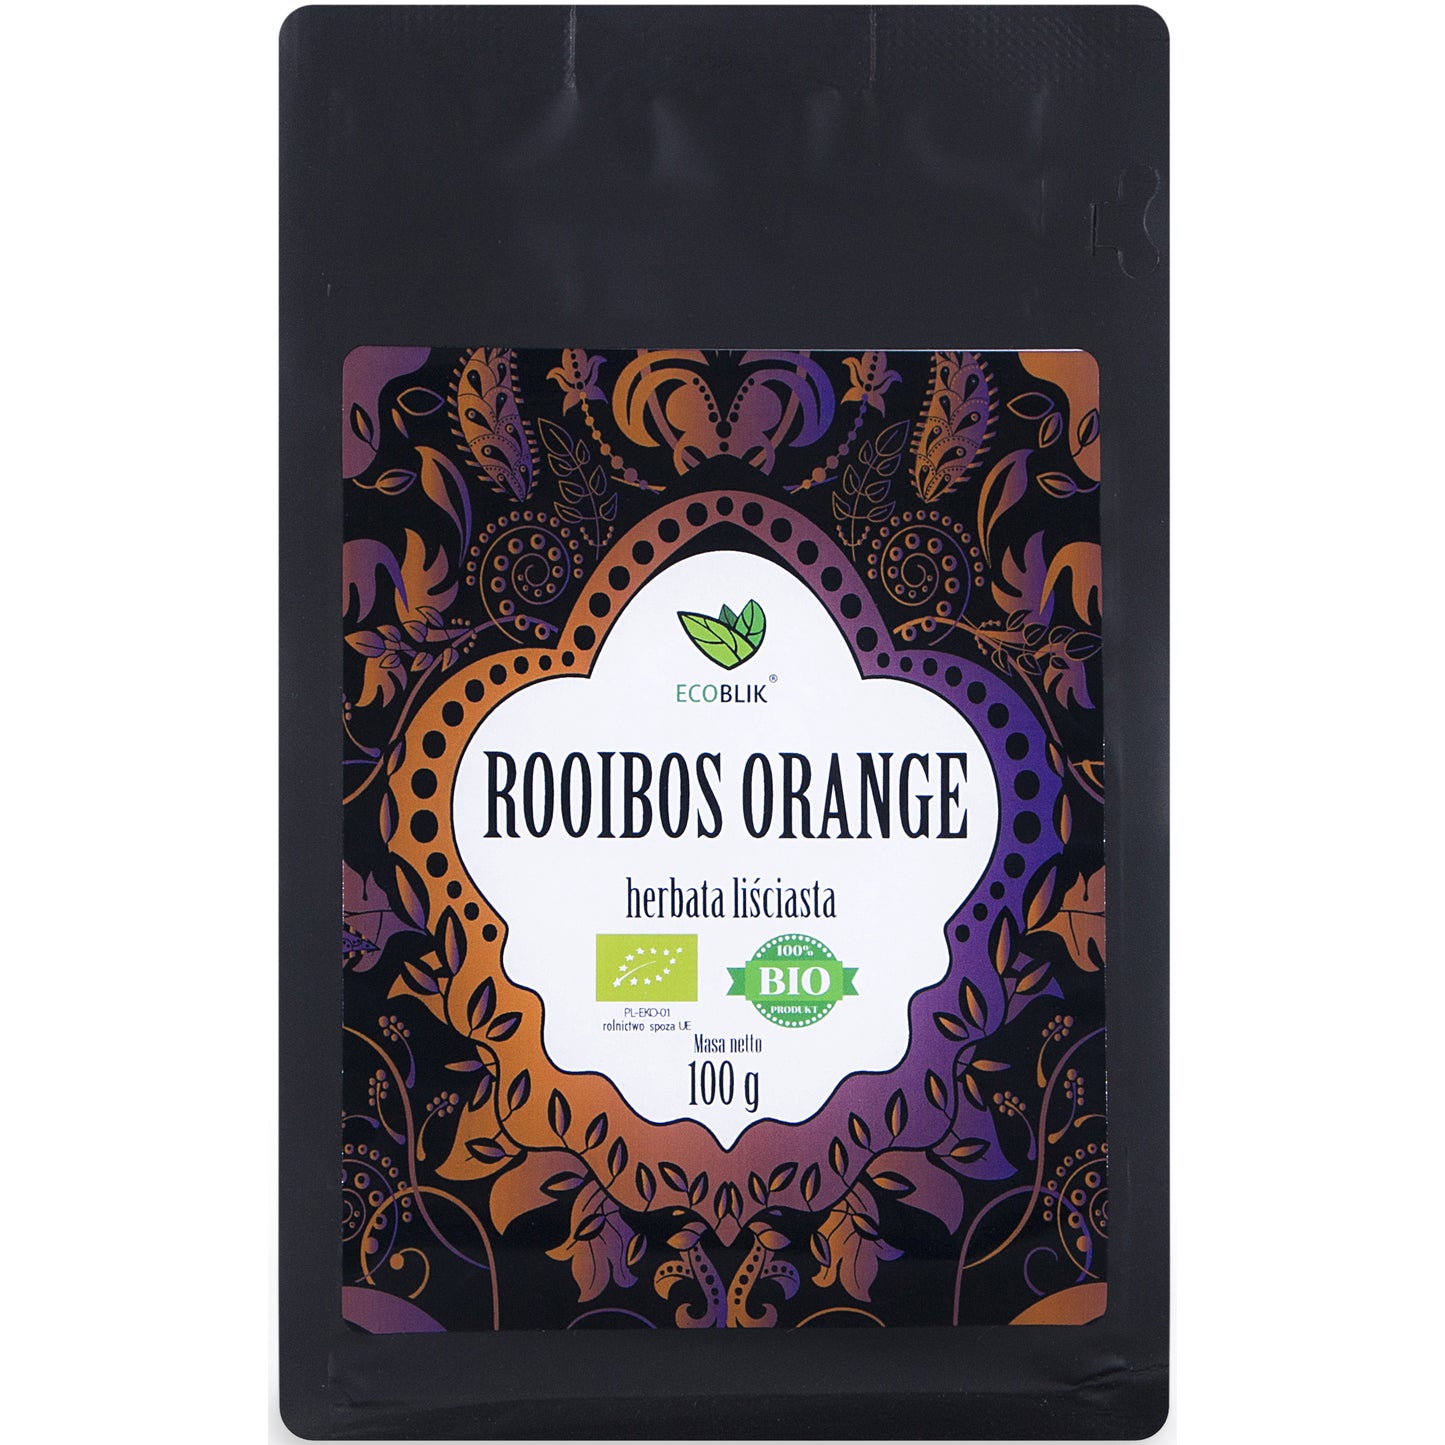 Organic loose leaf tea Rooibos Orange, 100g